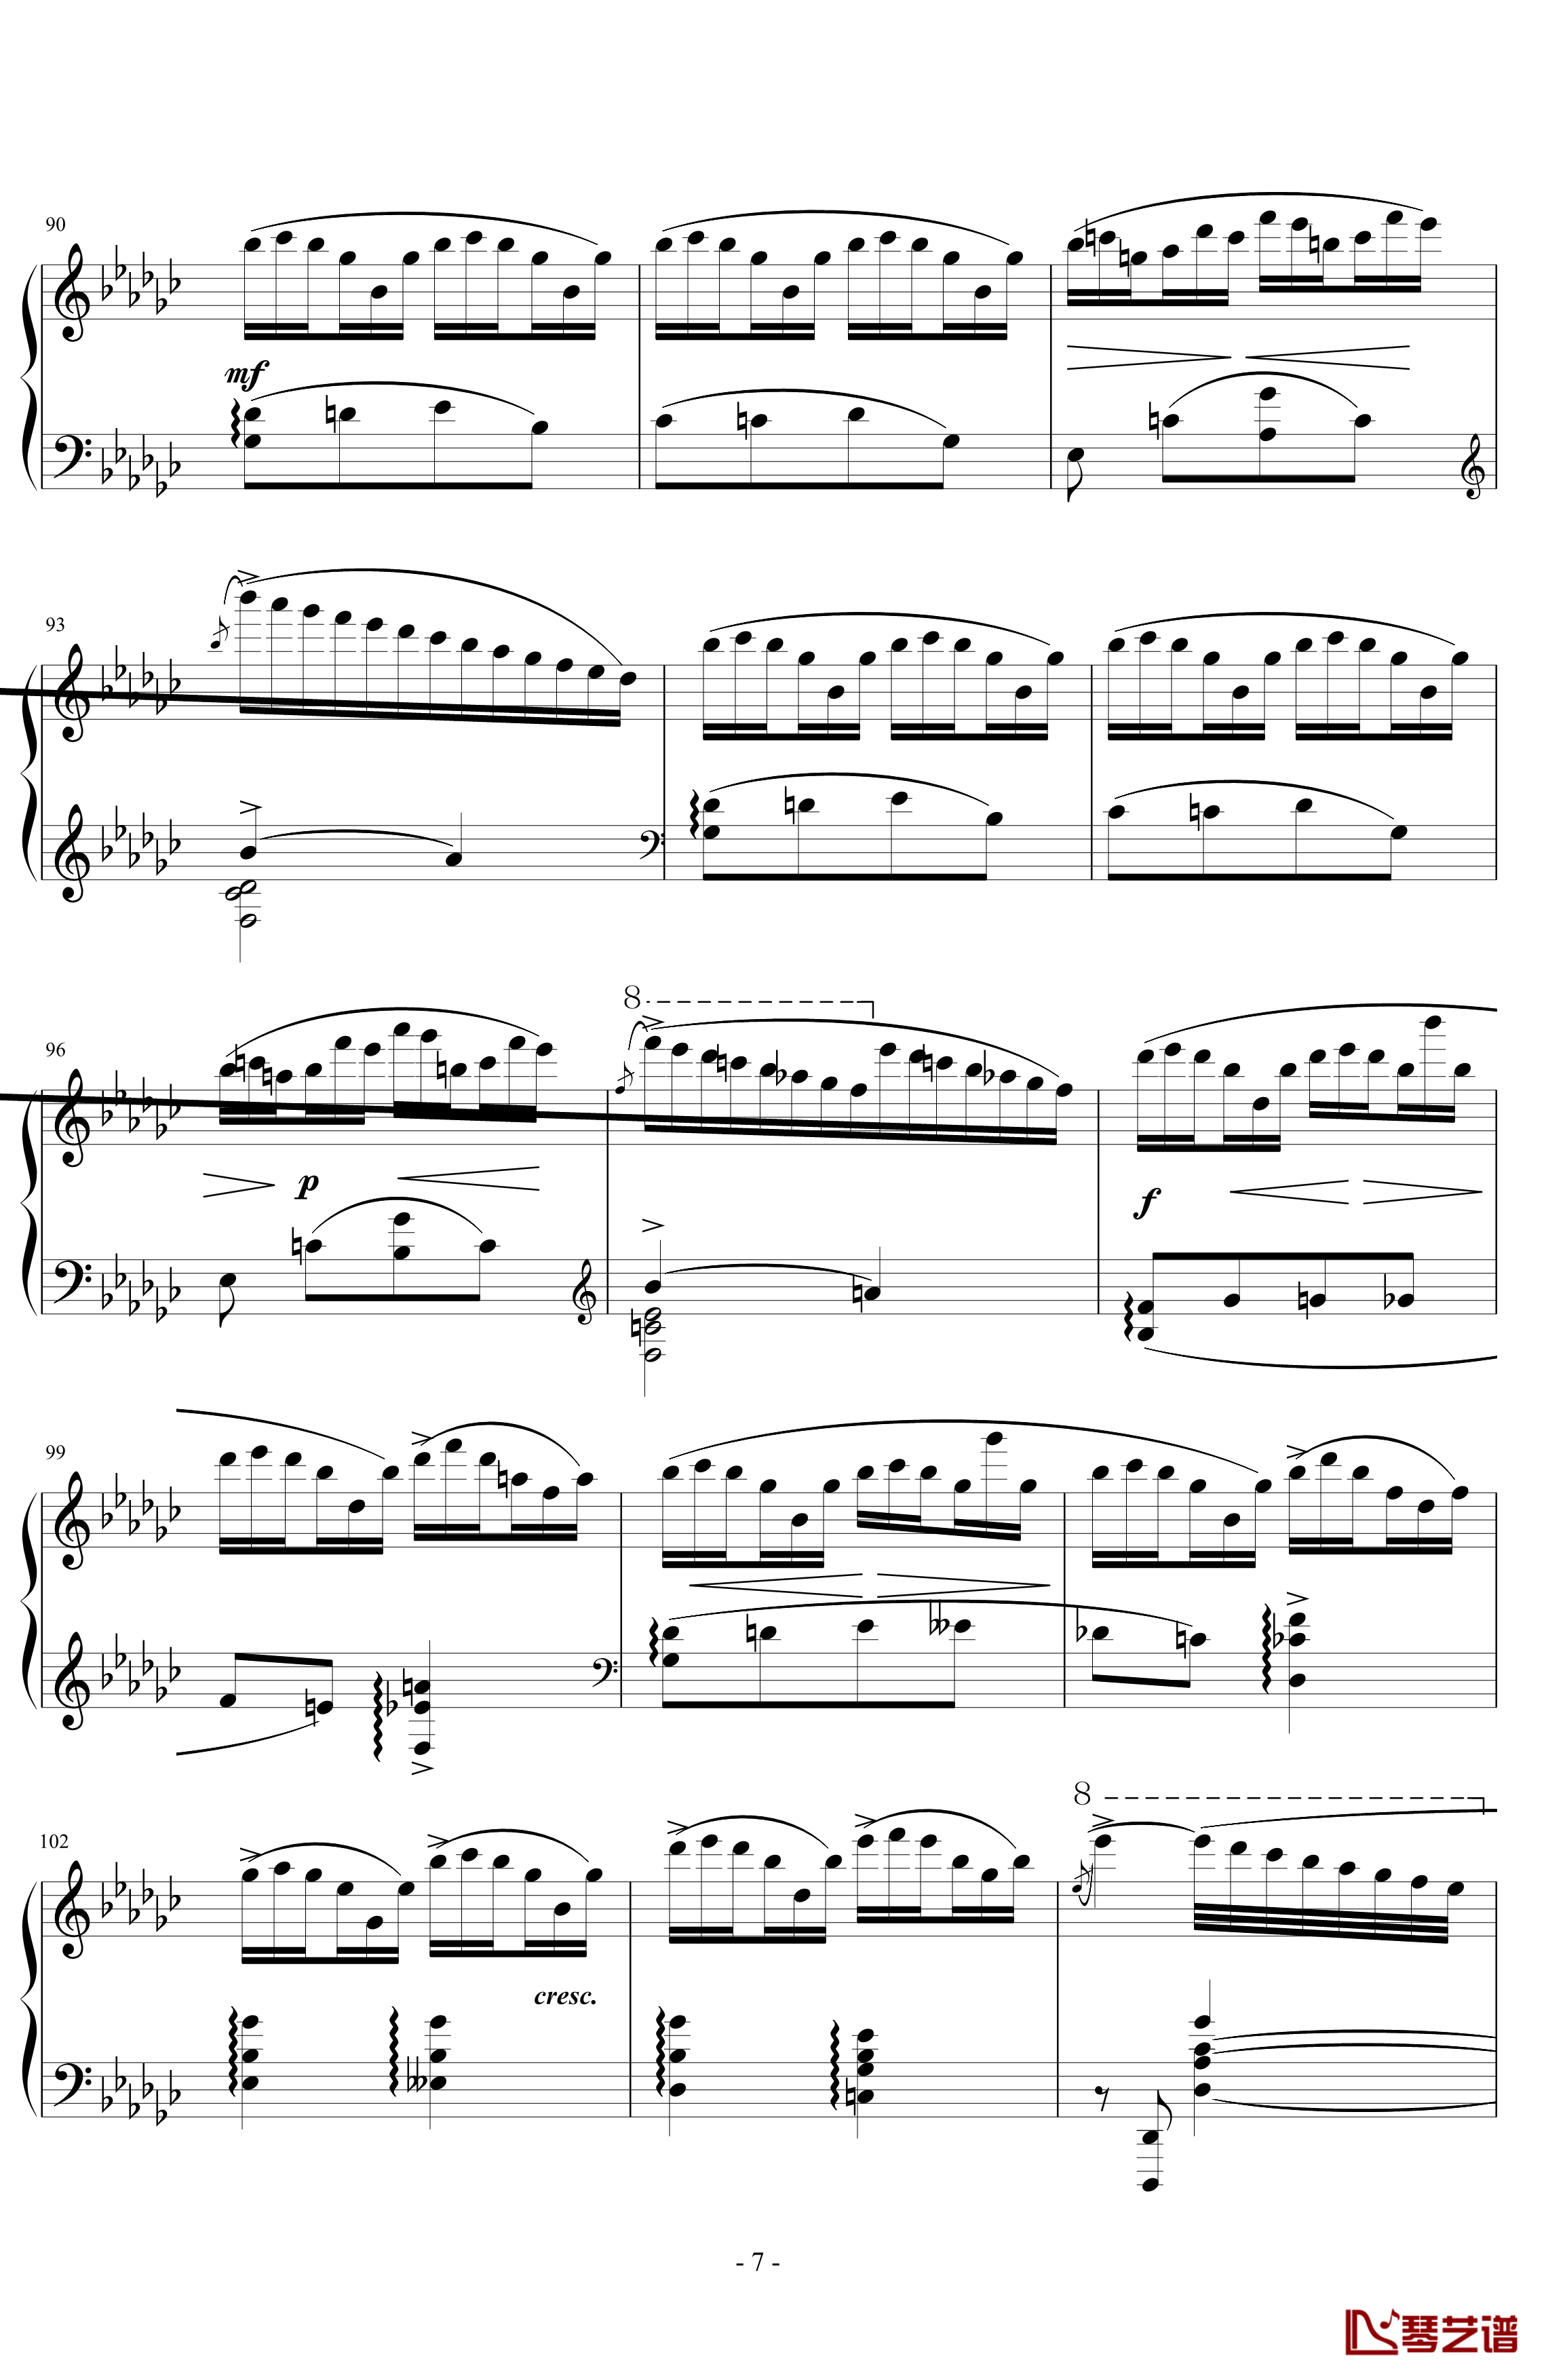 《练习曲Op.25 No.3》钢琴谱-阿连斯基-希望能为大家带来惊喜7